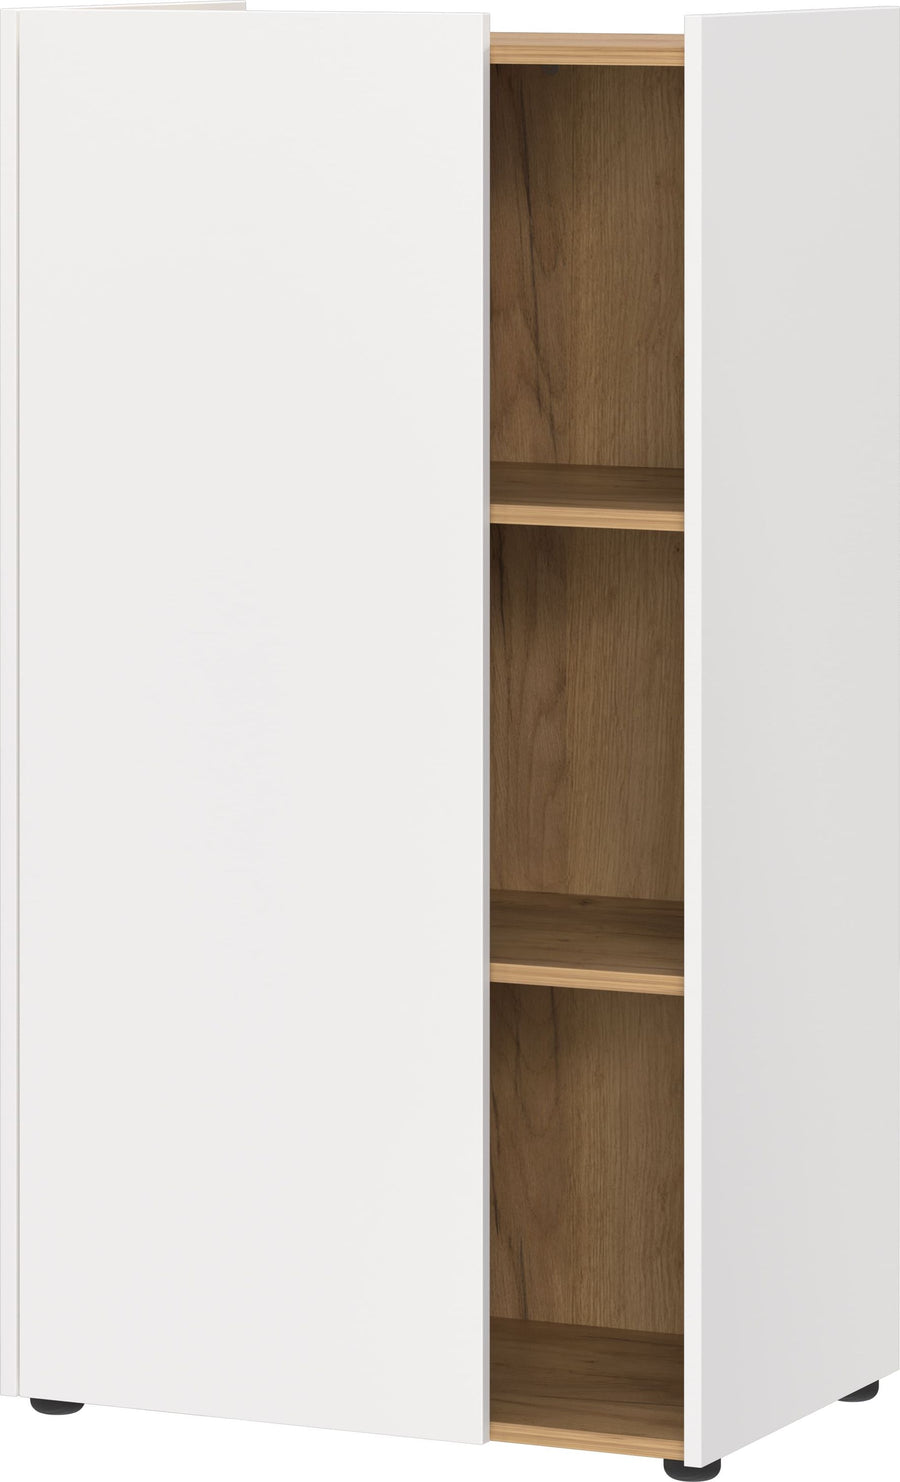 Kratzfester Büroschrank mit Fächernin_ 62x42x115_ Griffloses Design_ Weiß-Beige_ Deutscher Qualität_ SAGE-Serie von Kadima Design_Größe_ 62x42x115 cm_#sku_BARK6001_633#